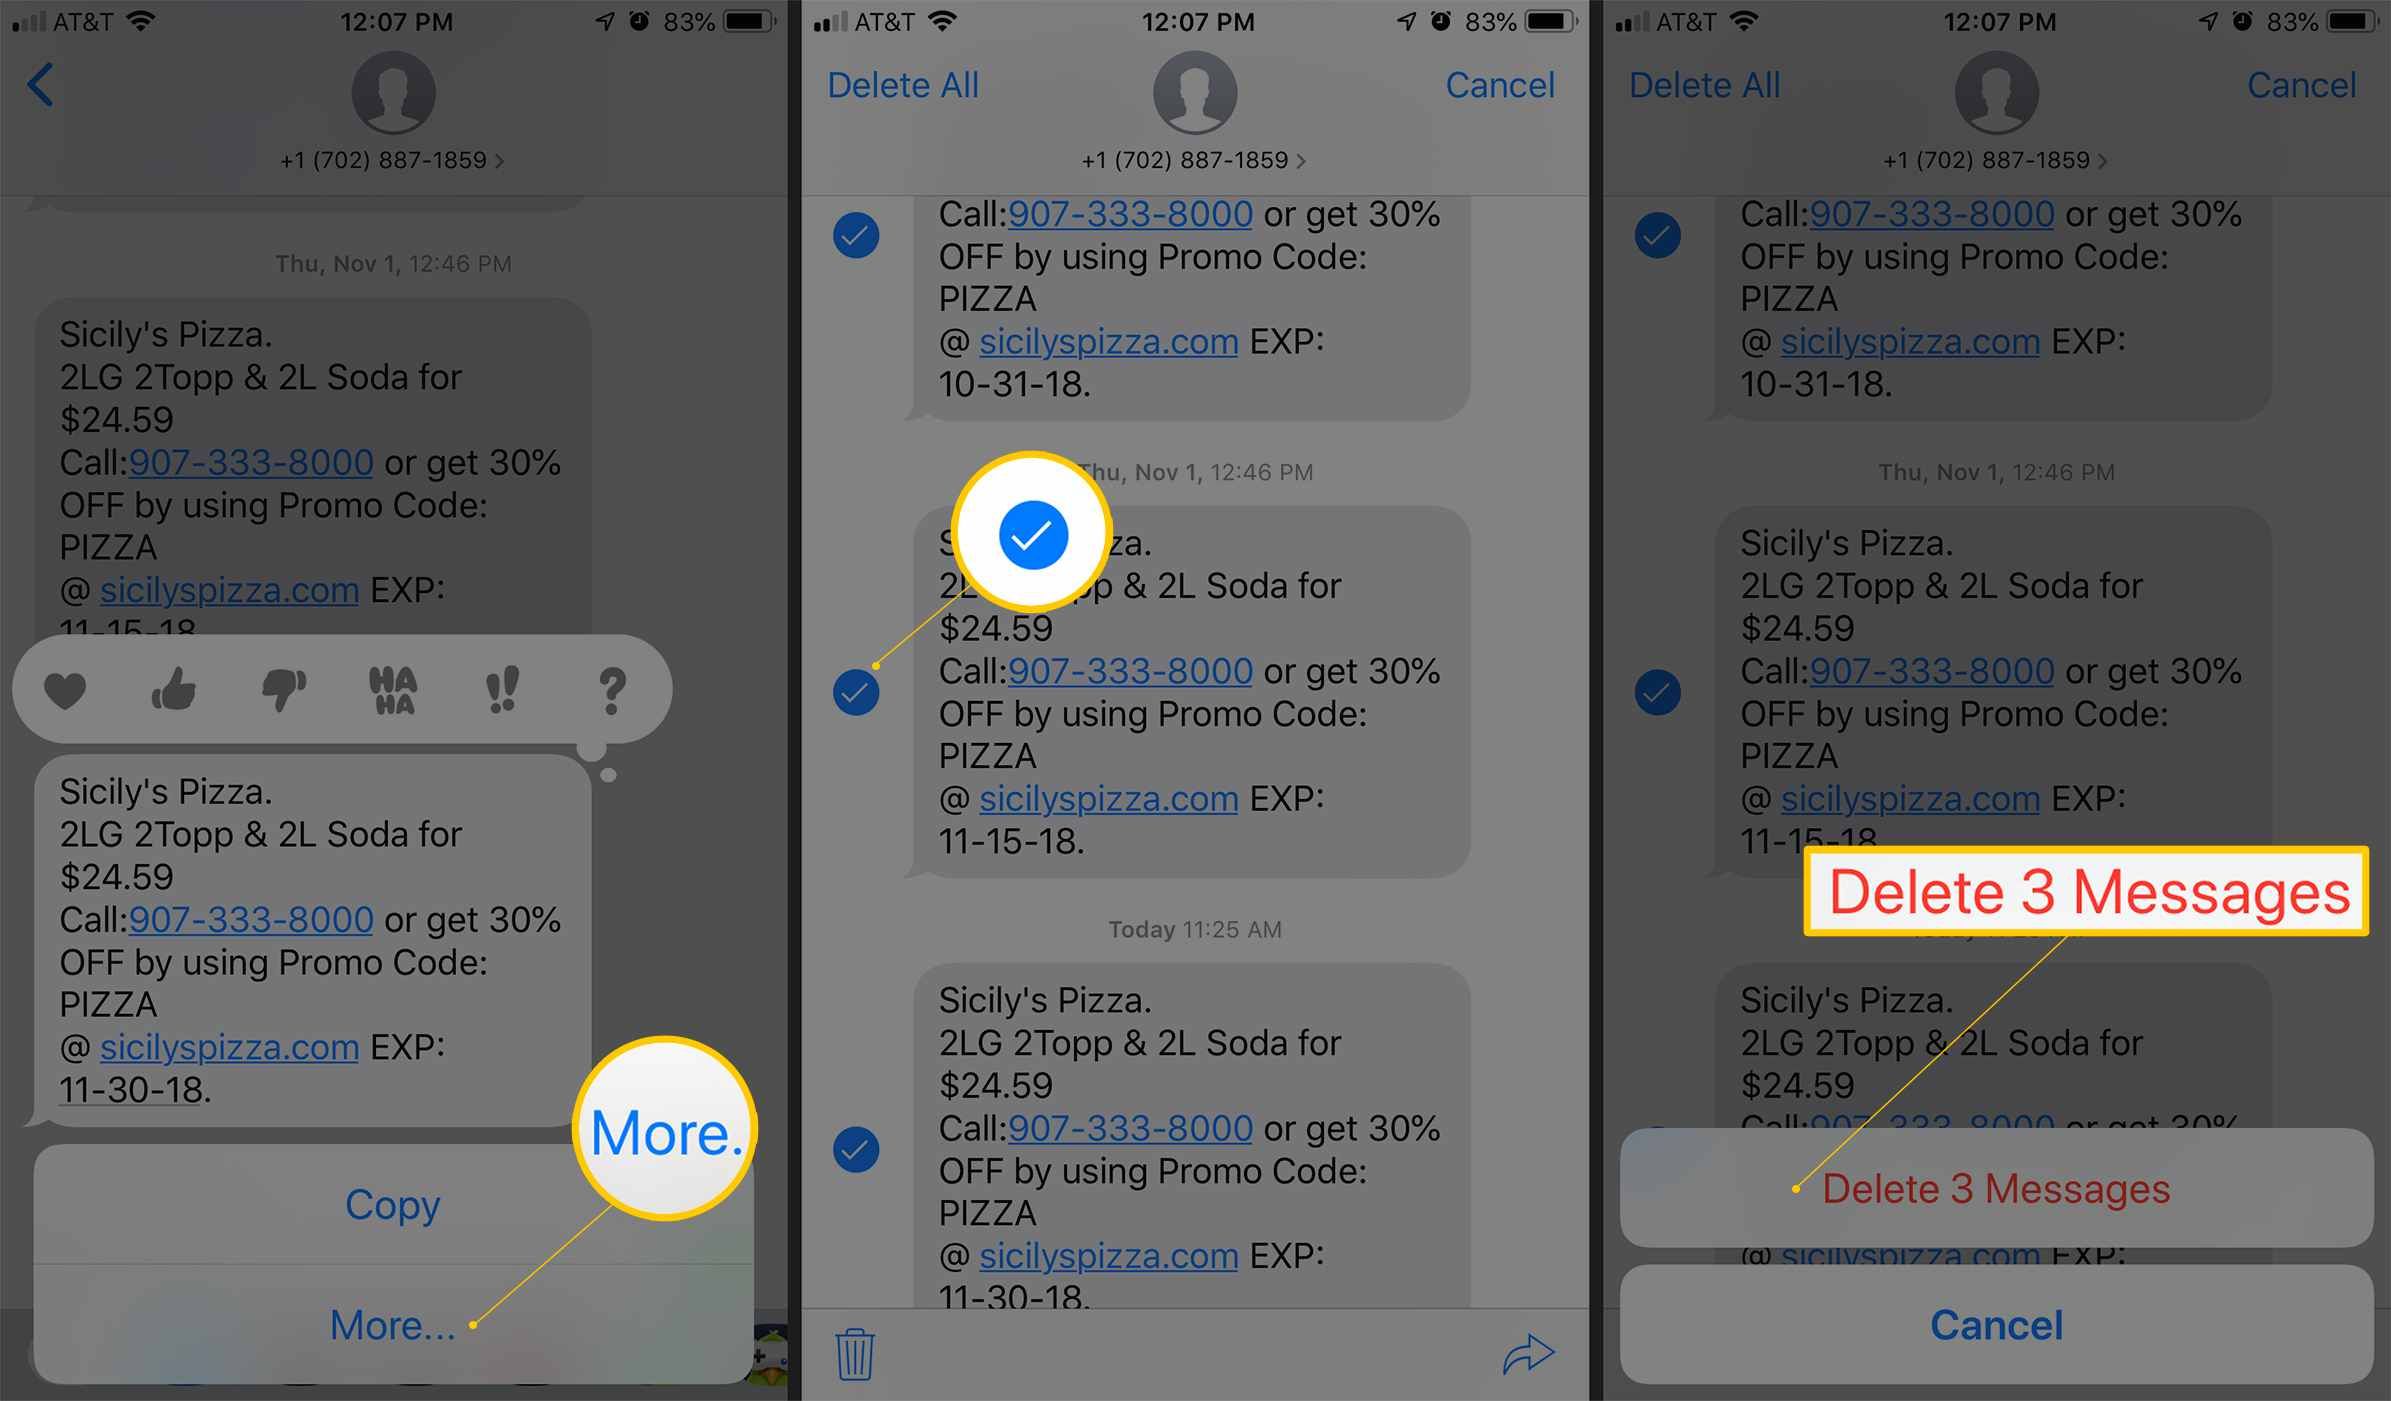 Три экрана iOS с кнопкой «Дополнительно», флажком рядом с сообщениями для удаления и кнопкой подтверждения удаления 3 сообщений